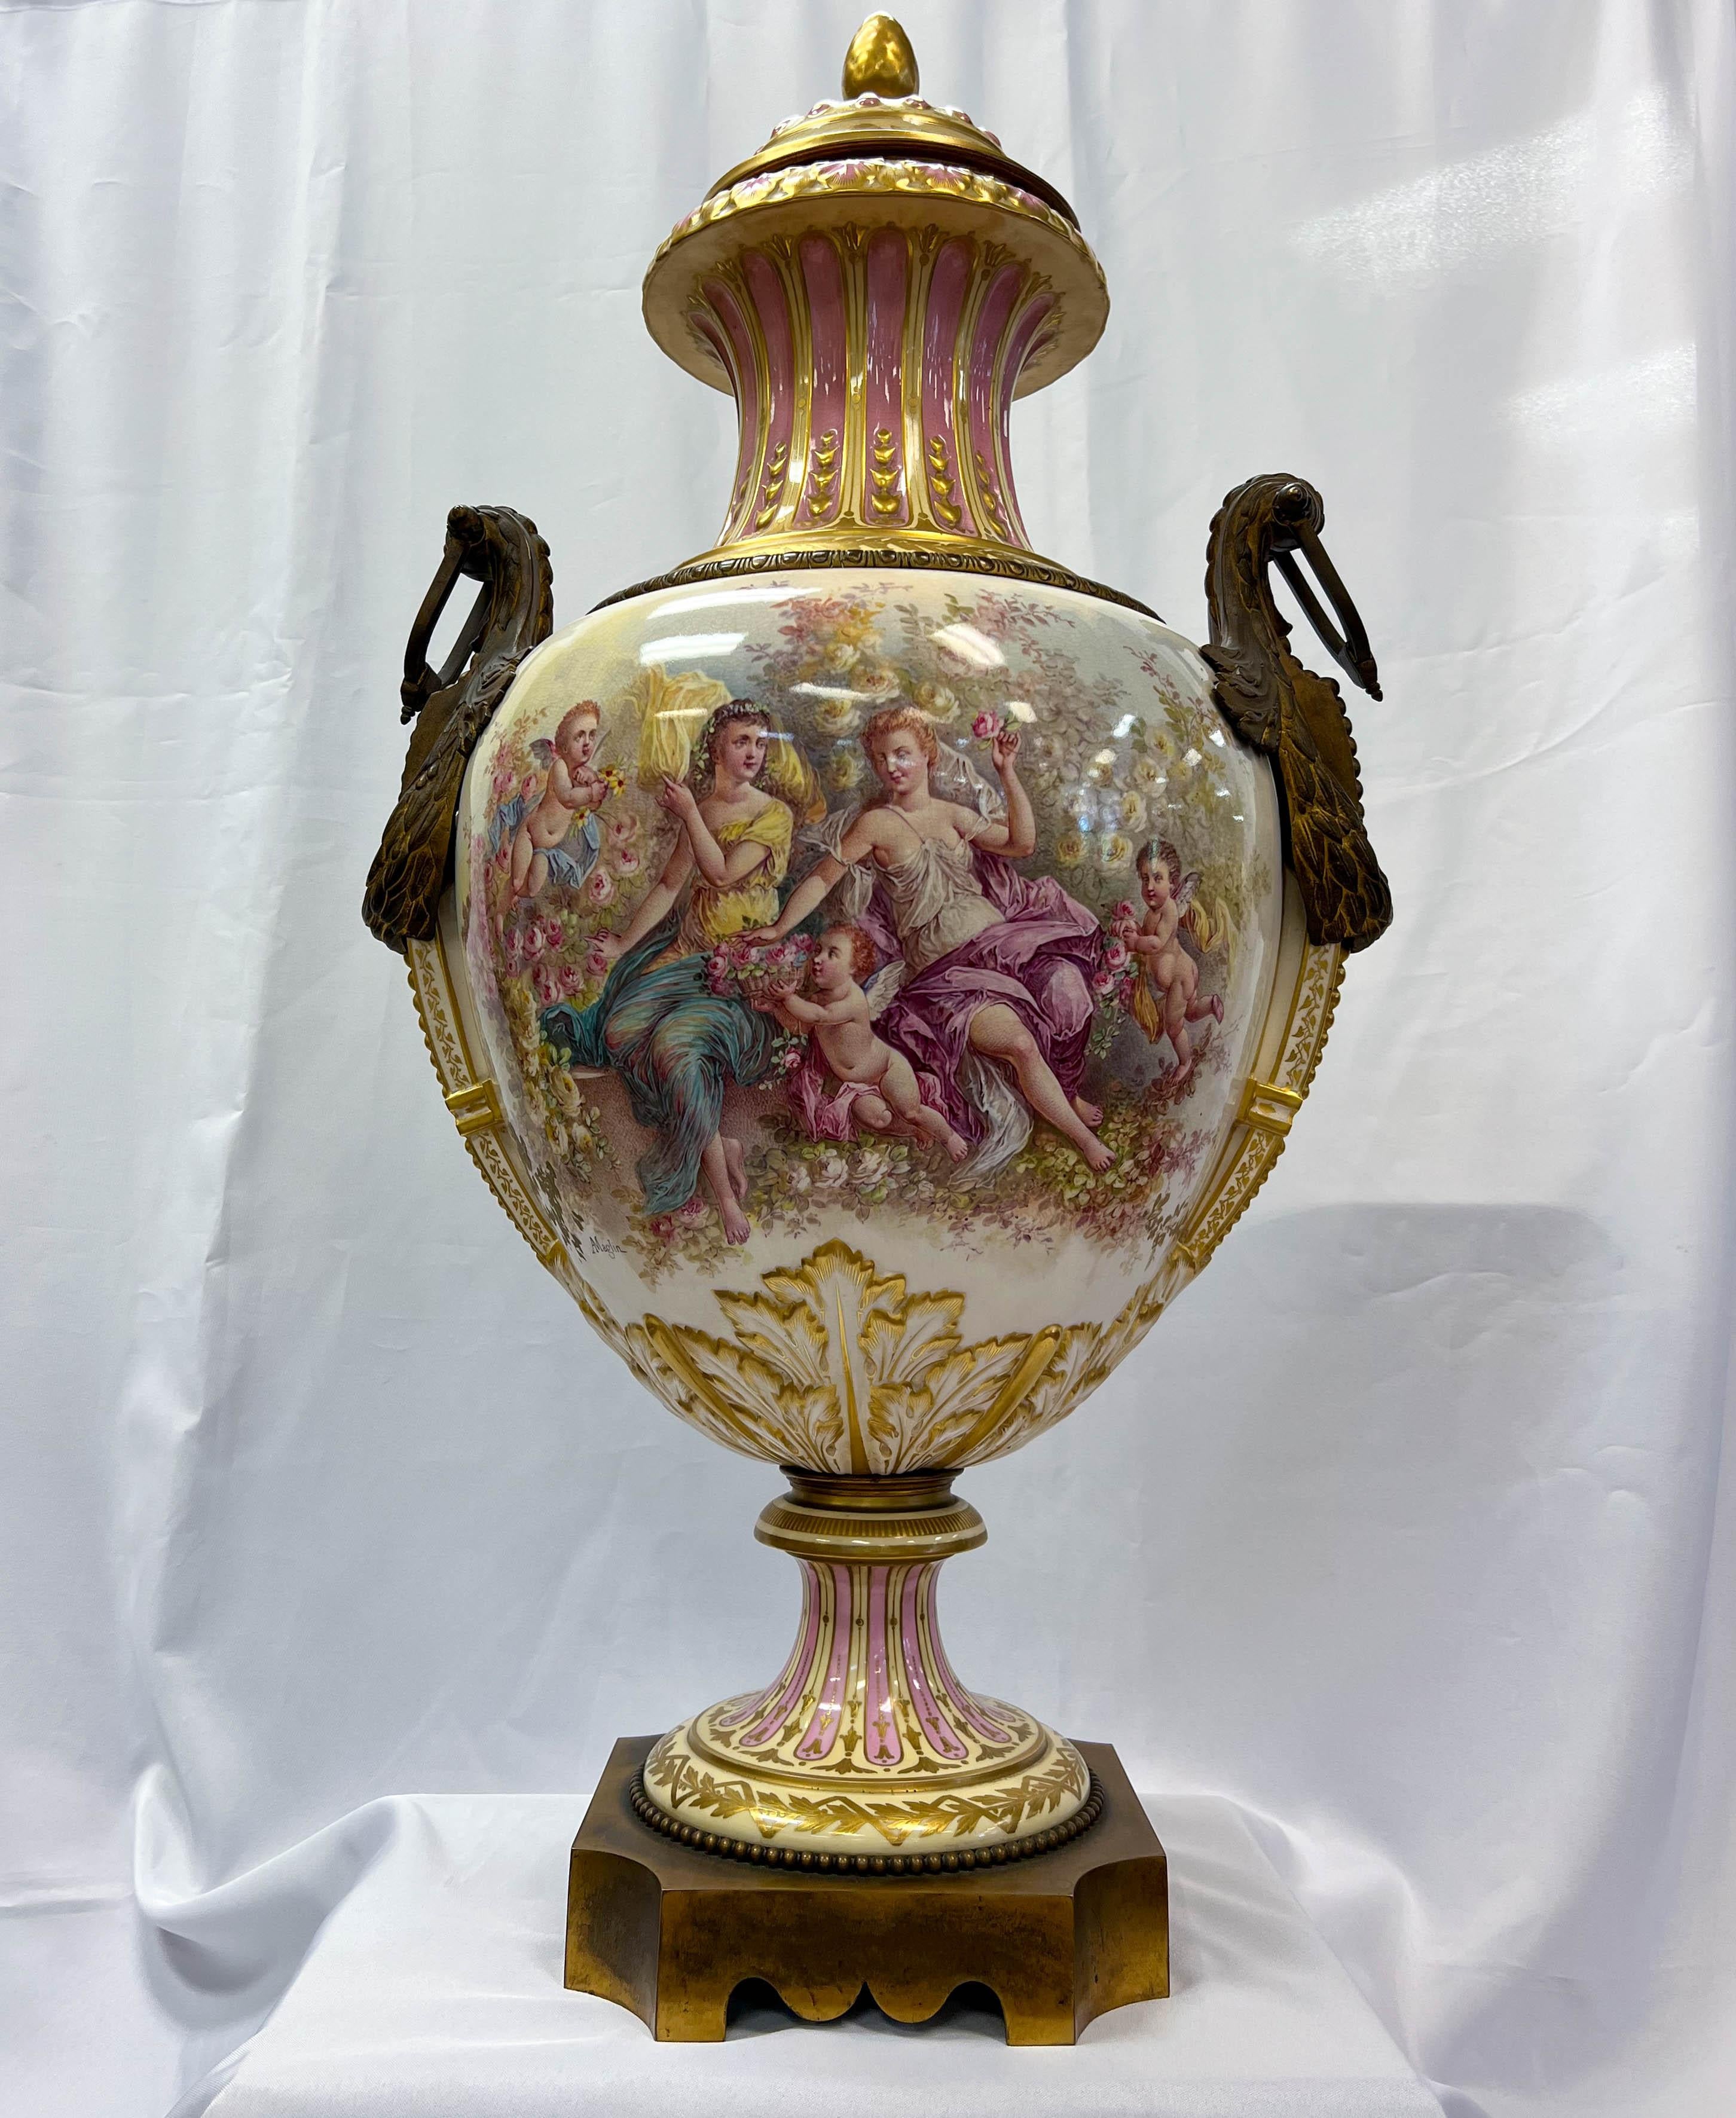 Une urne de Sèvres du XIXe siècle, montée en bronze doré, illustre l'élégance du style néoclassique. Elle est fabriquée à partir de la porcelaine dure la plus fine, également connue sous le nom de 